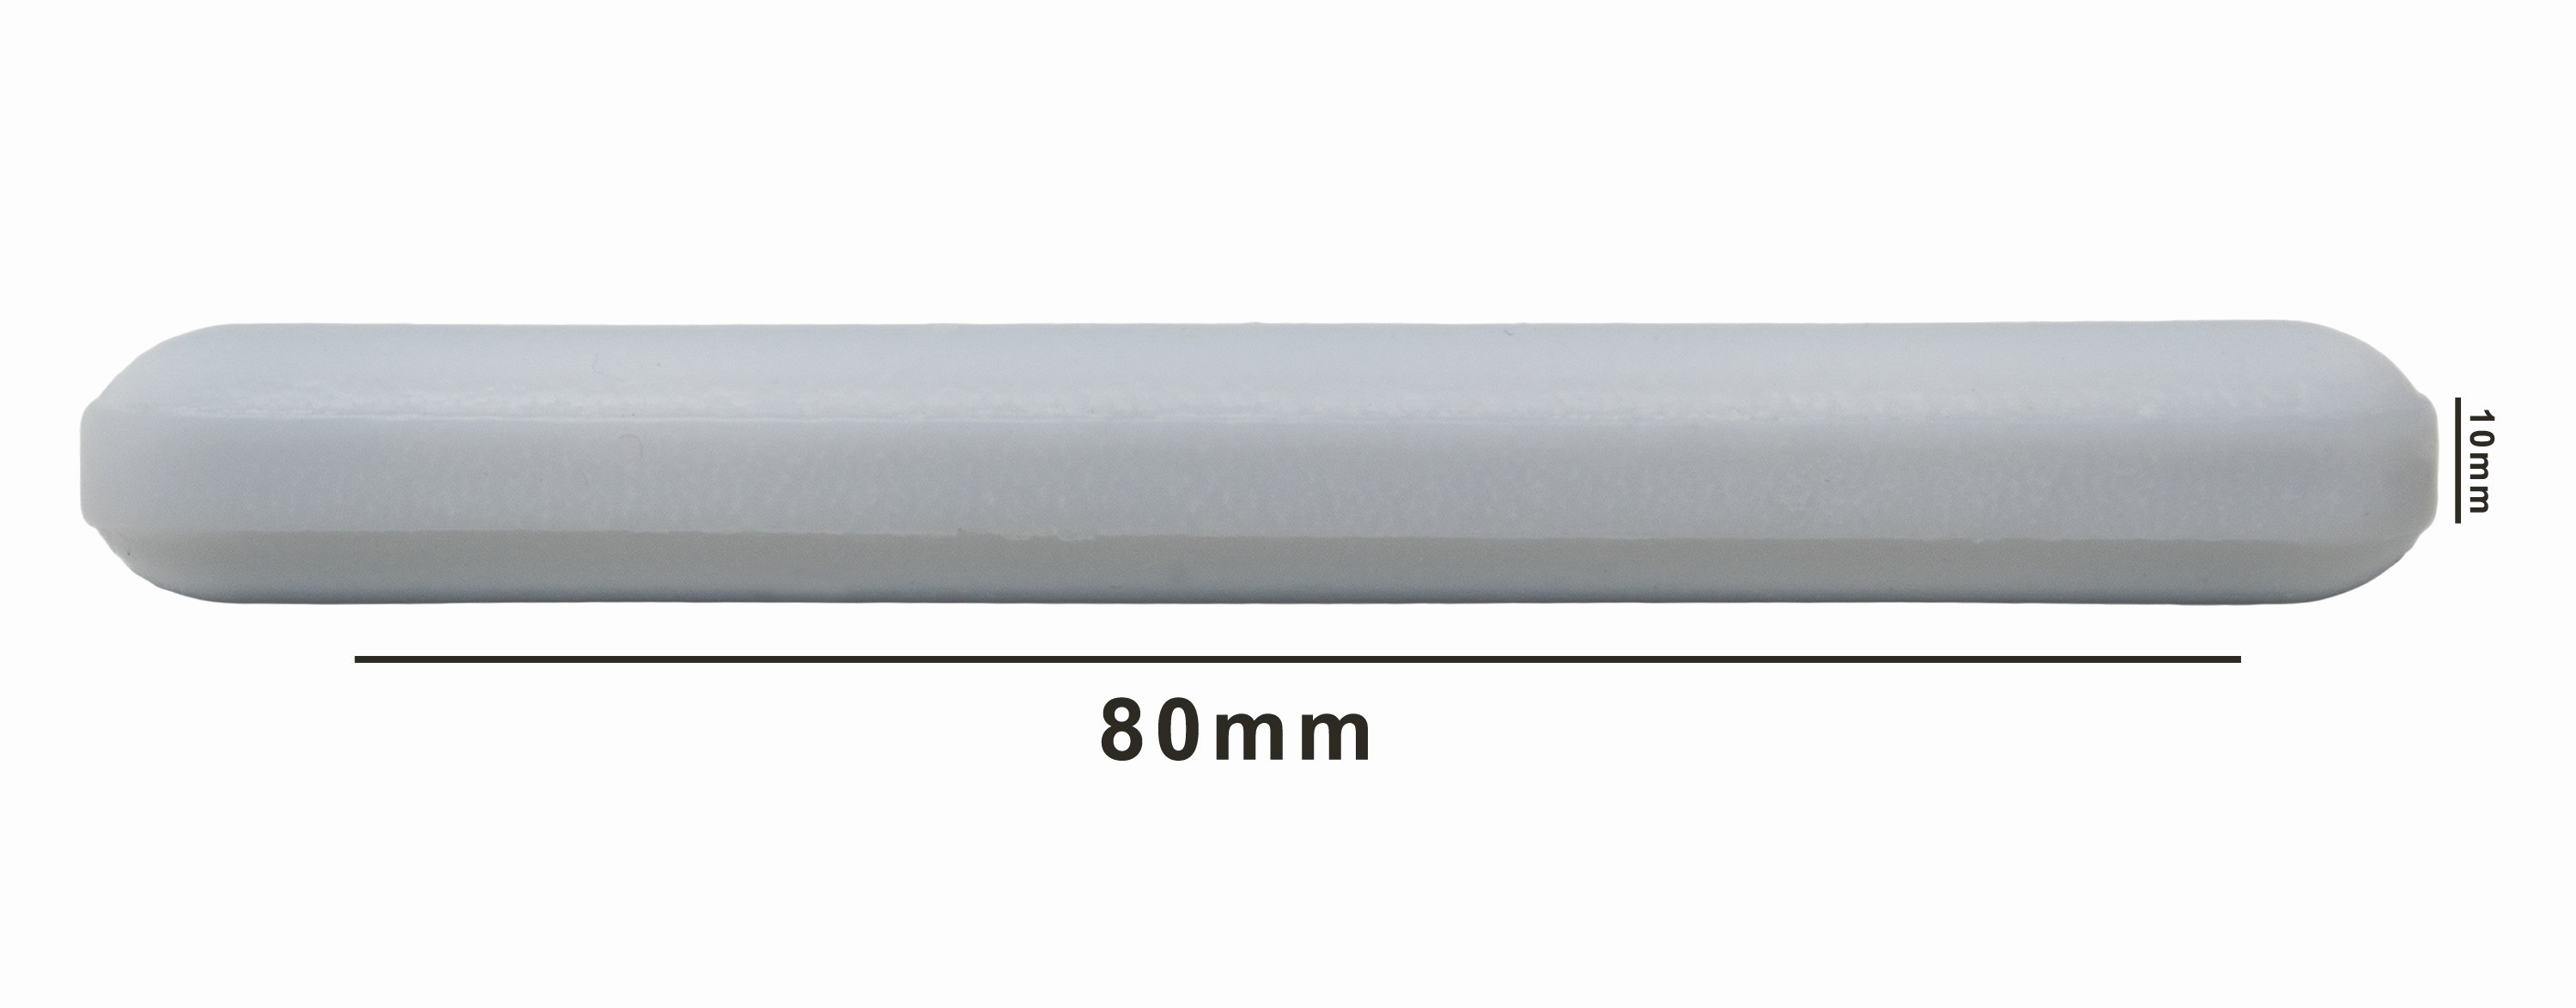 SP Bel-Art Spinbar Teflon Polygon Magnetic Stirring Bar; 80 x 10mm, White, without Pivot Ring